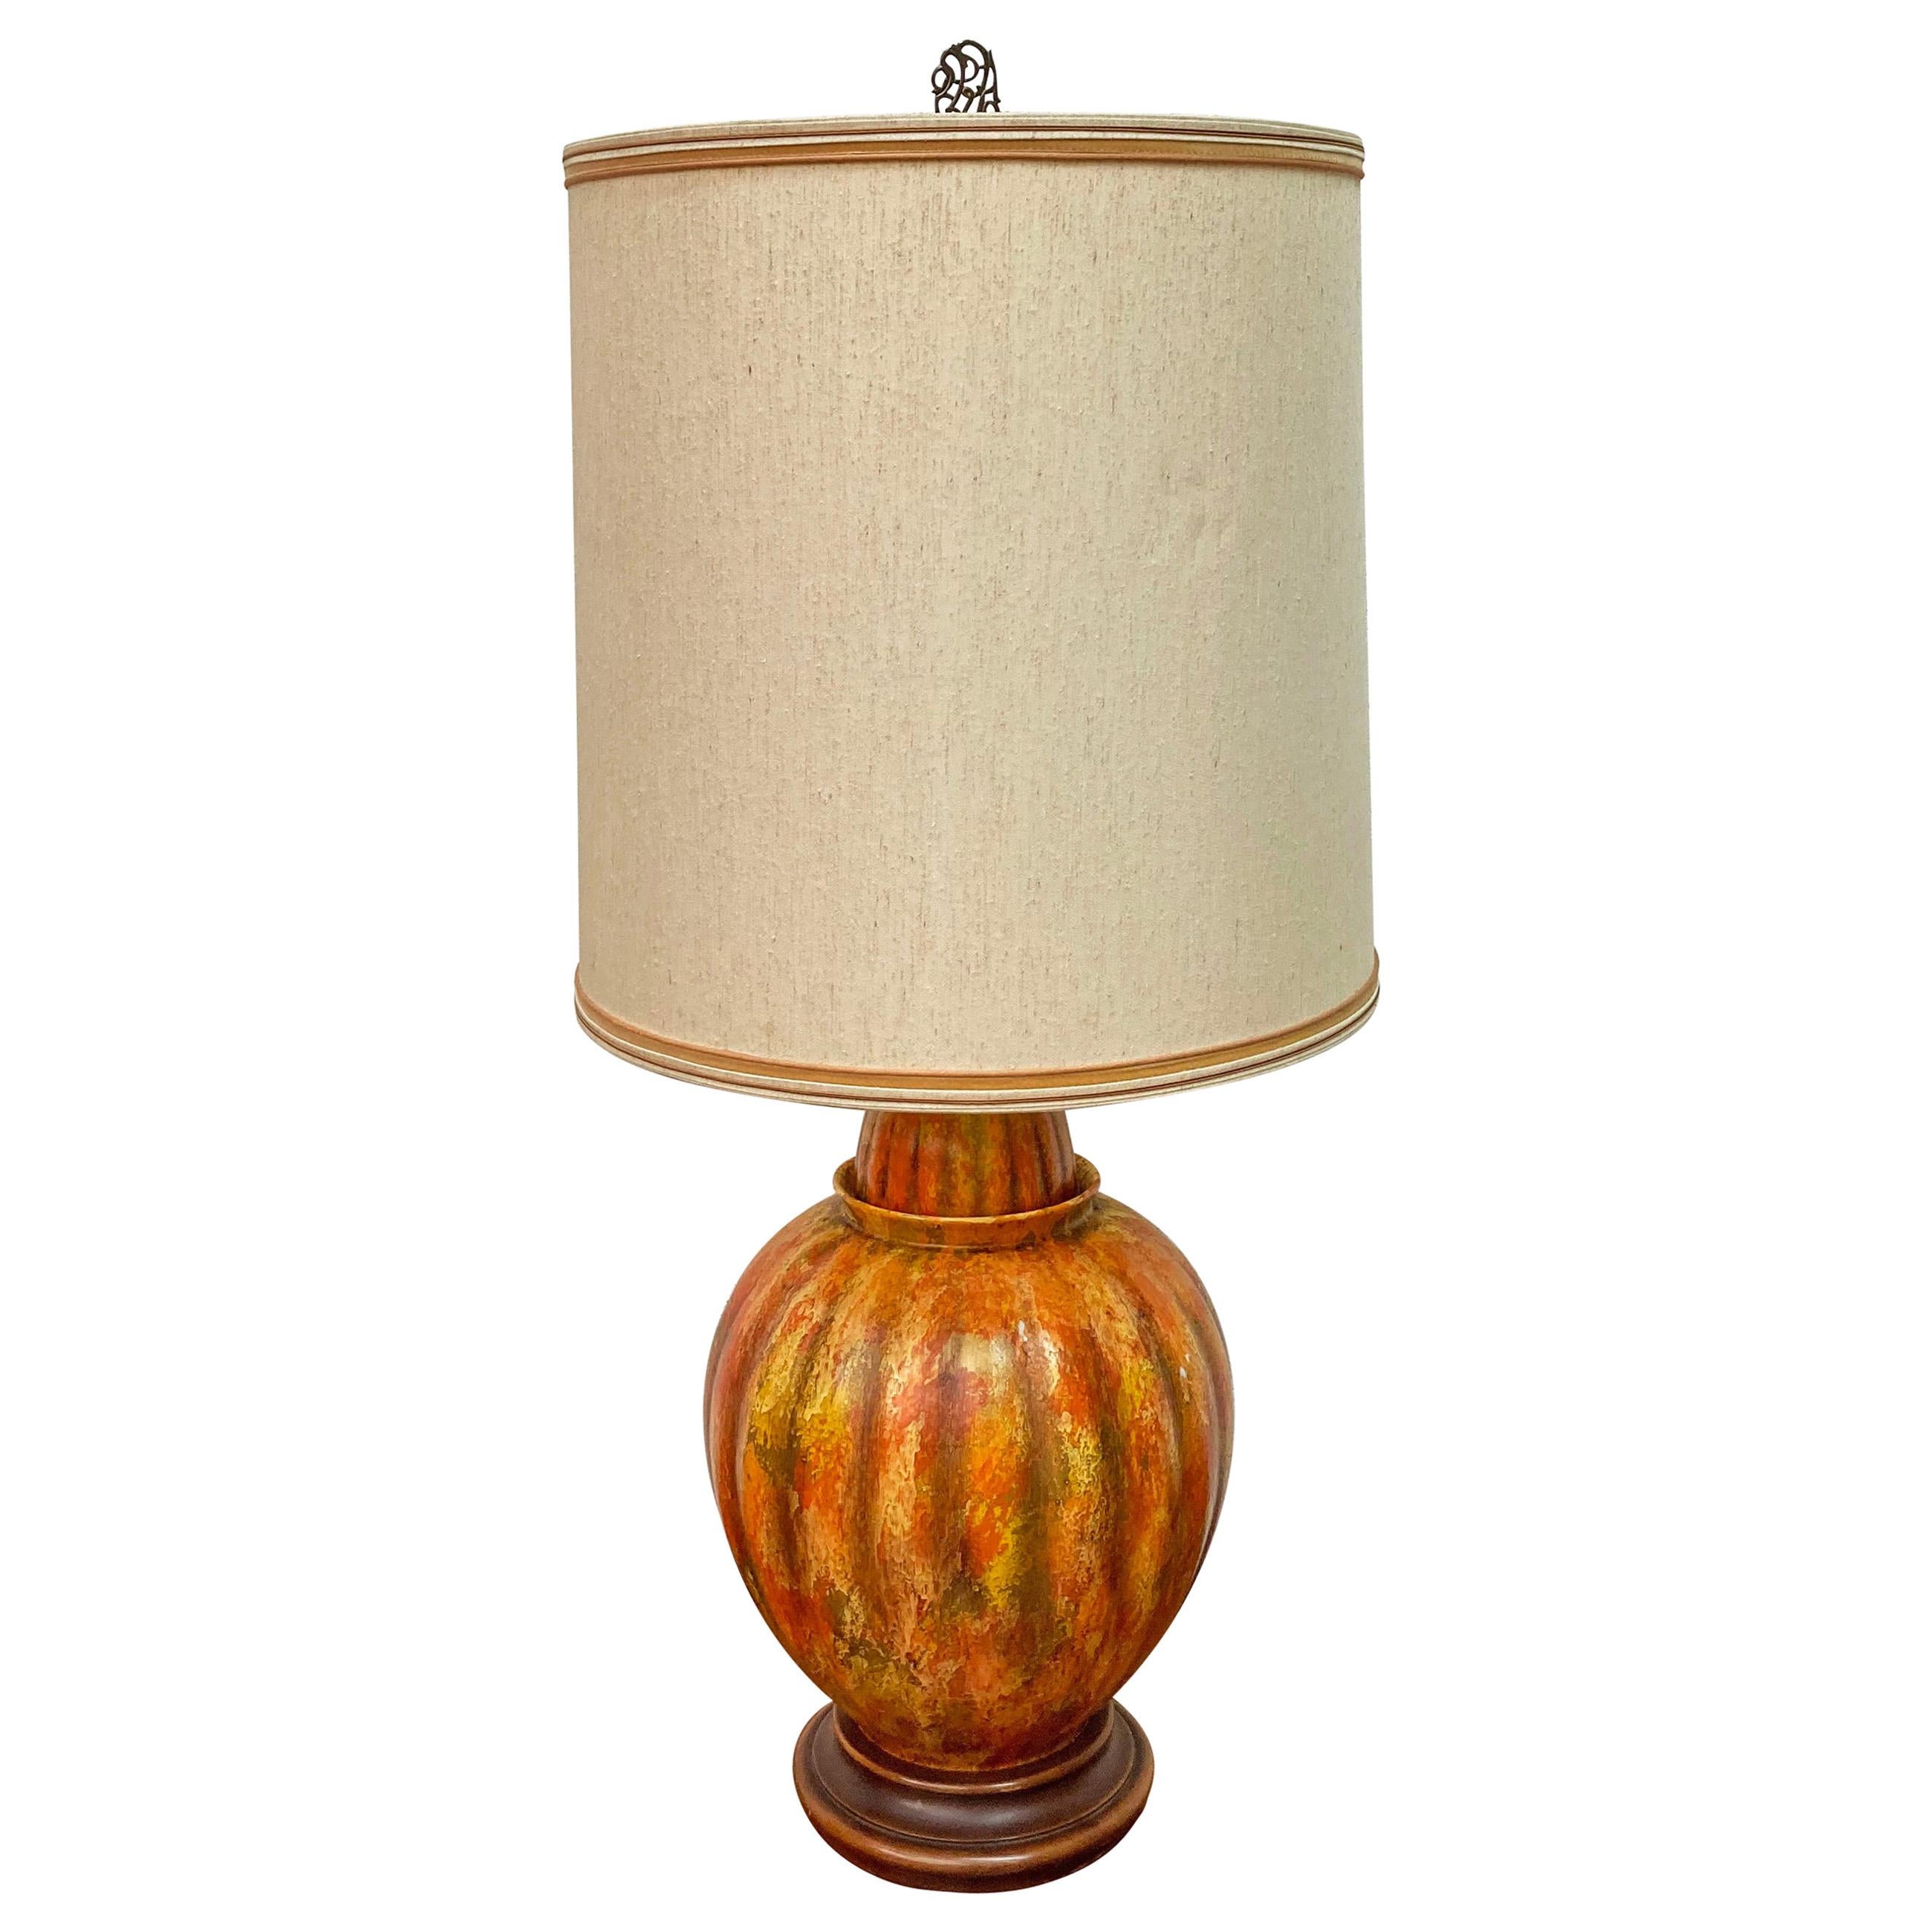 1950s Lamp Mid Century Brown Orange Leaf Retro Vintage Textured Table Lamp